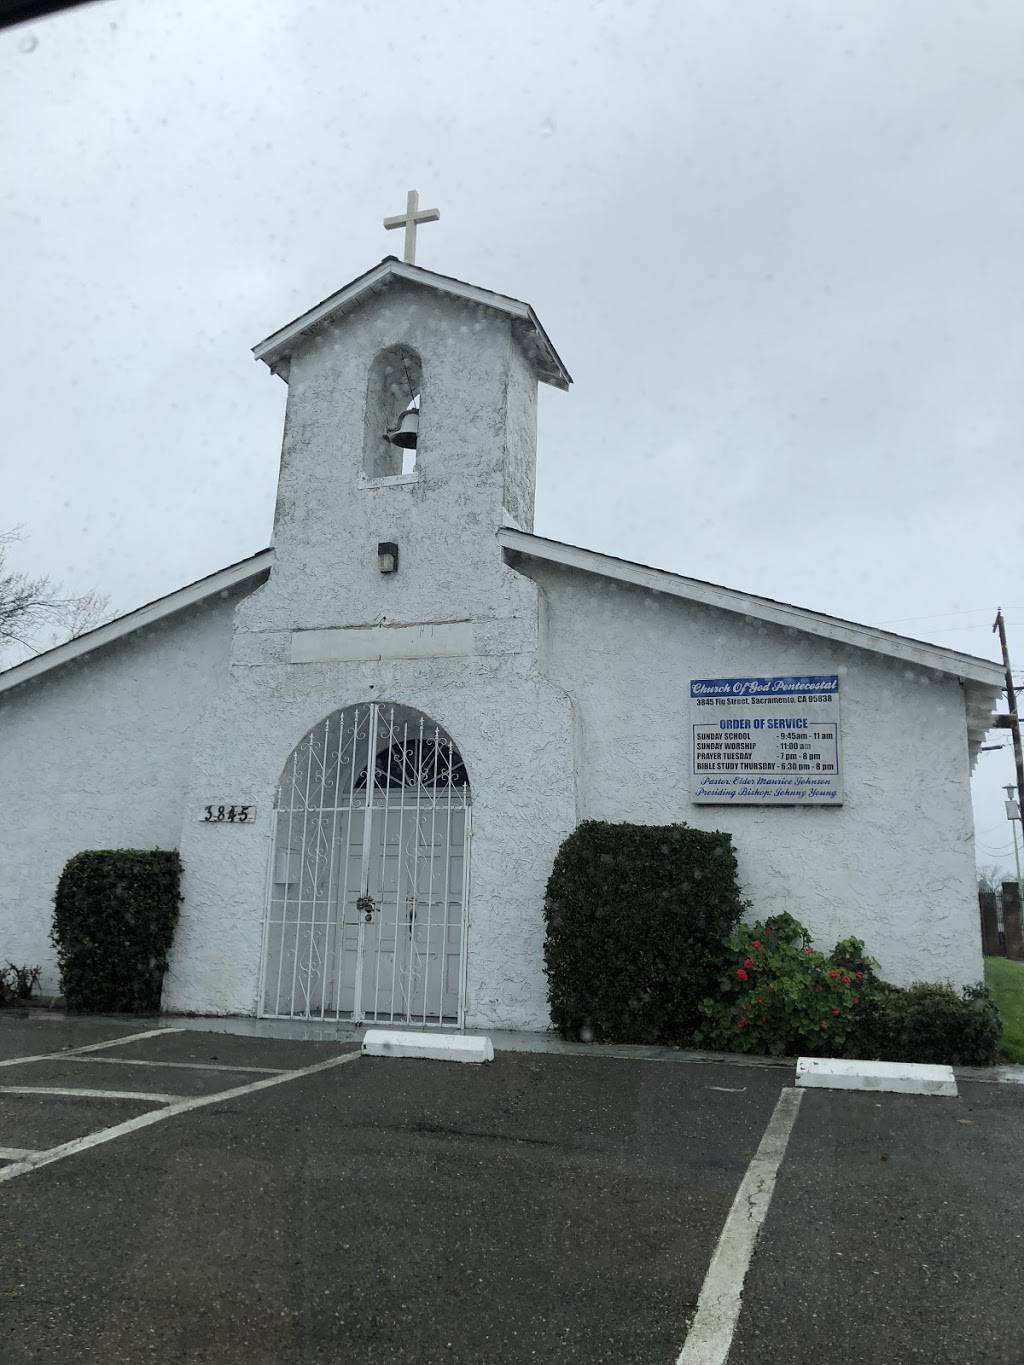 Church of God Pentecostal | 3845 Fig St, Sacramento, CA 95838 | Phone: (916) 923-2784